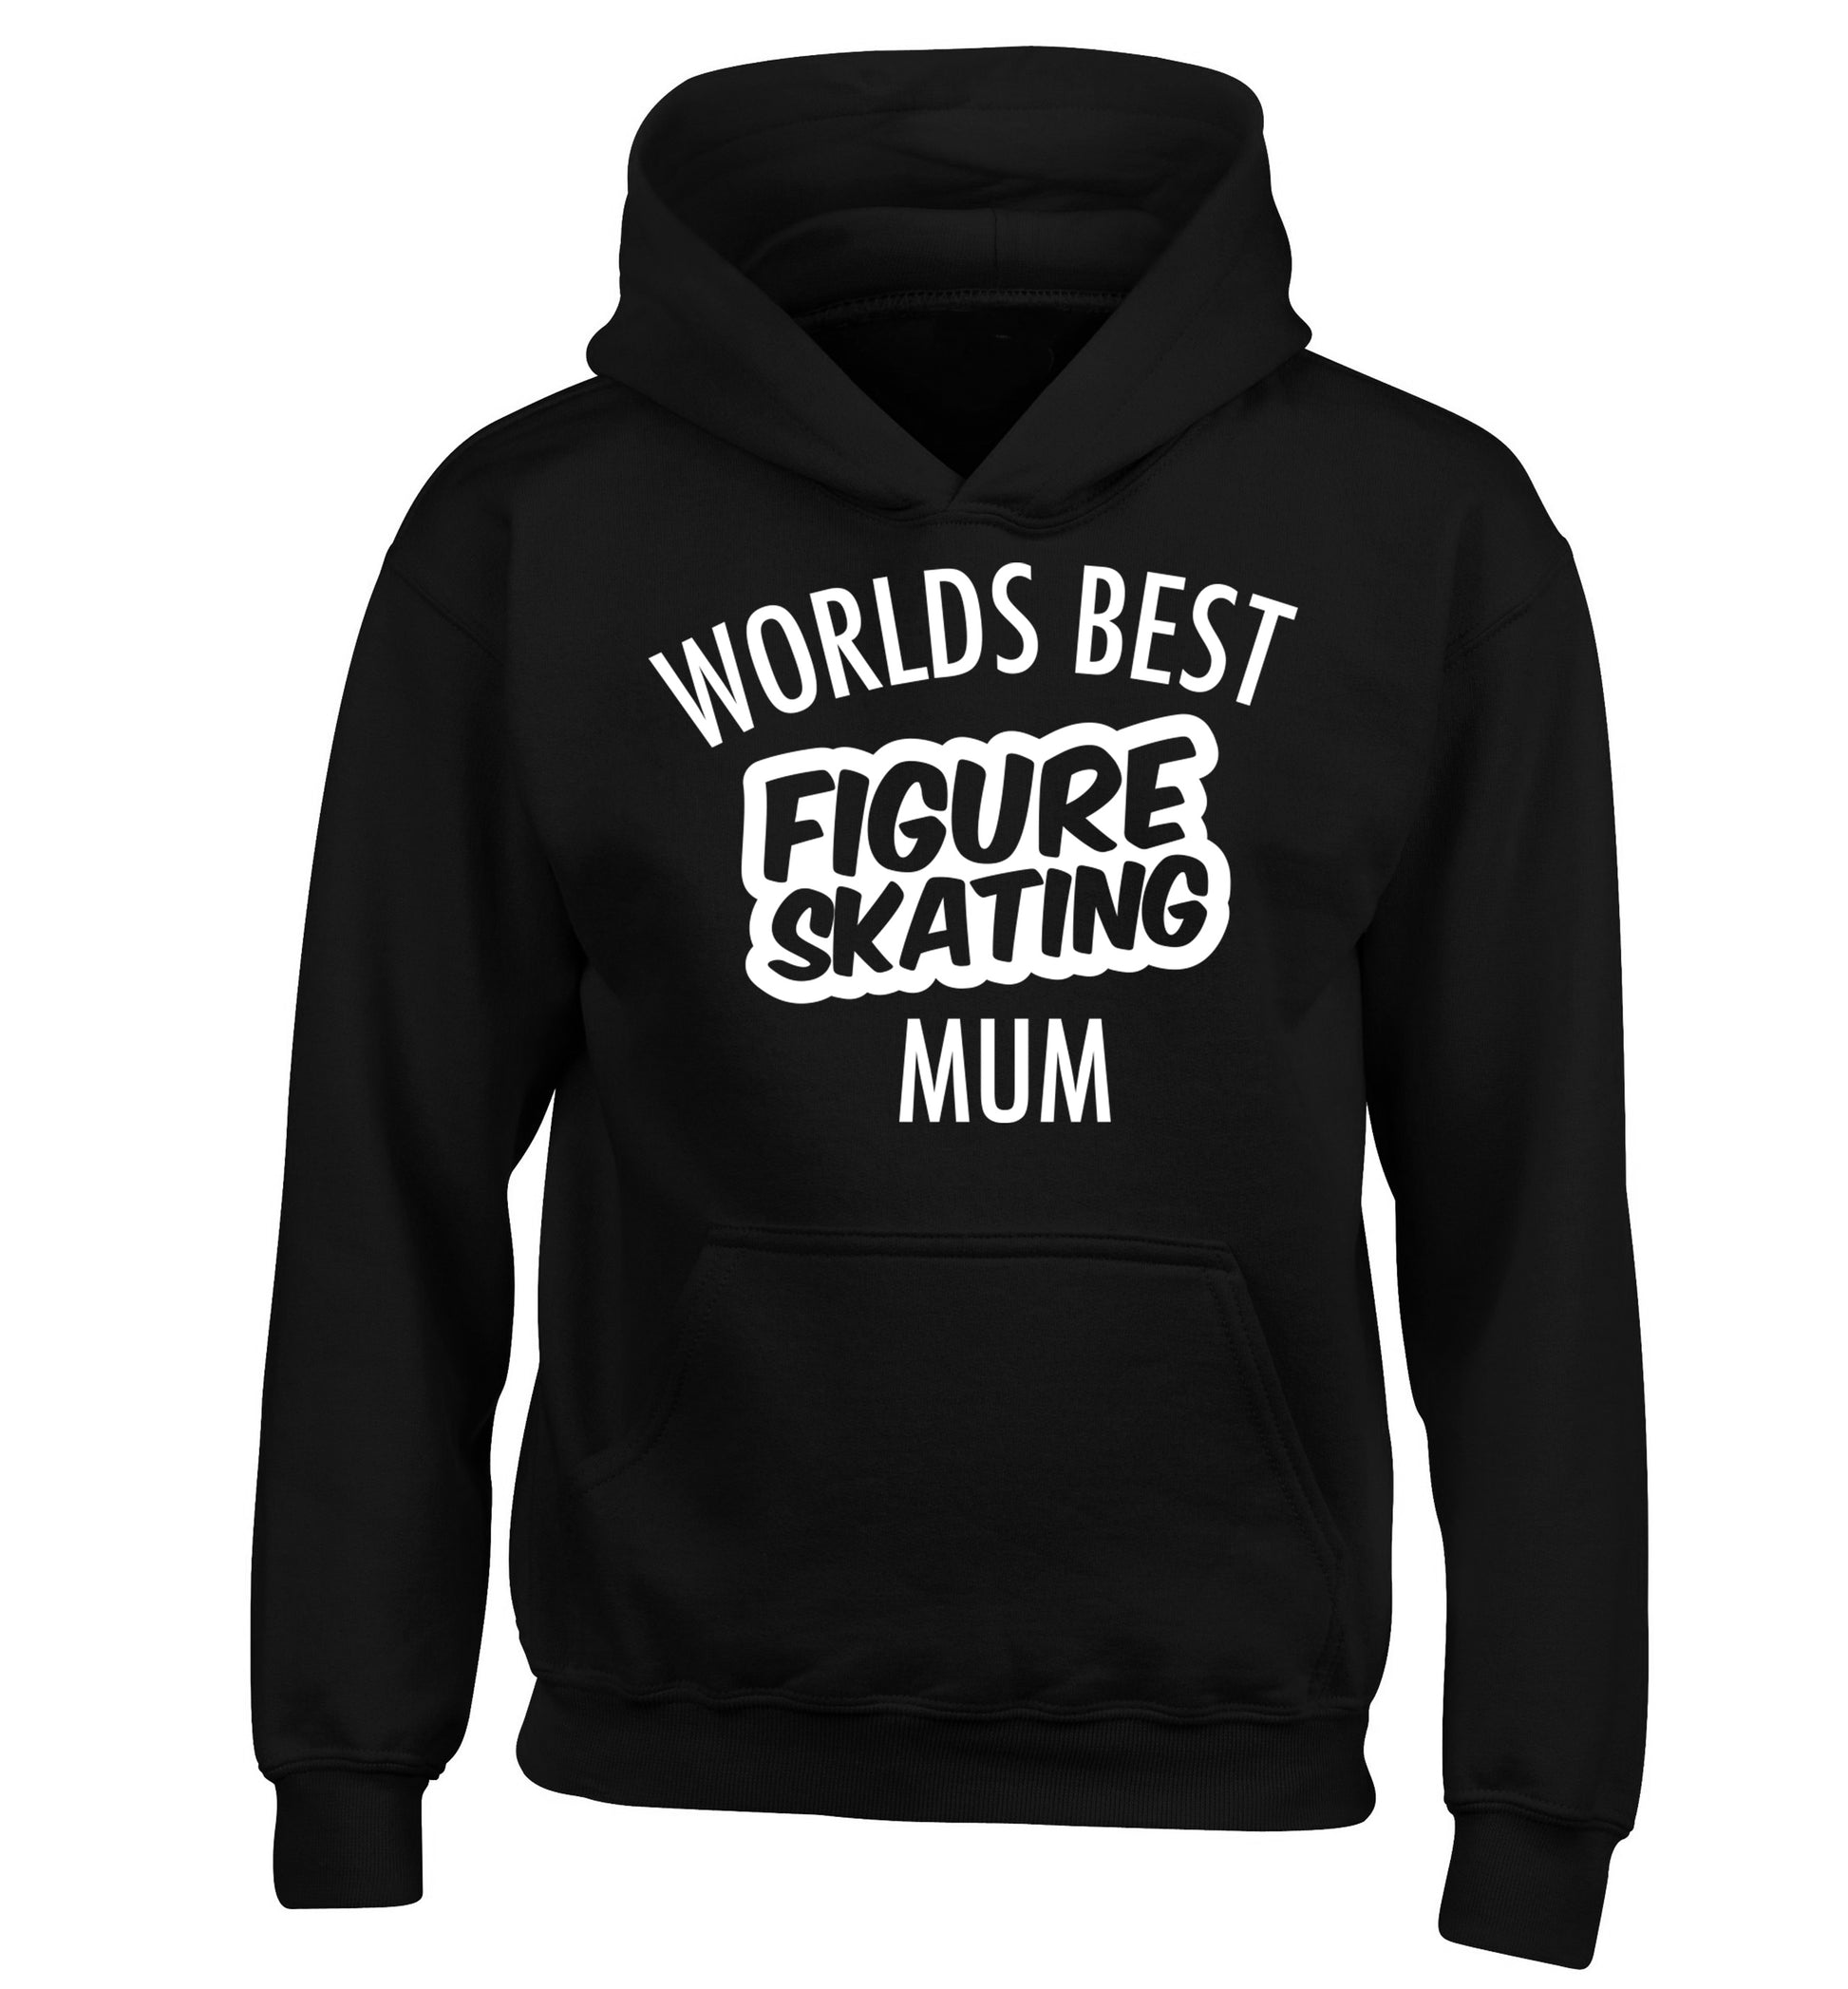 Worlds best figure skating mum children's black hoodie 12-14 Years